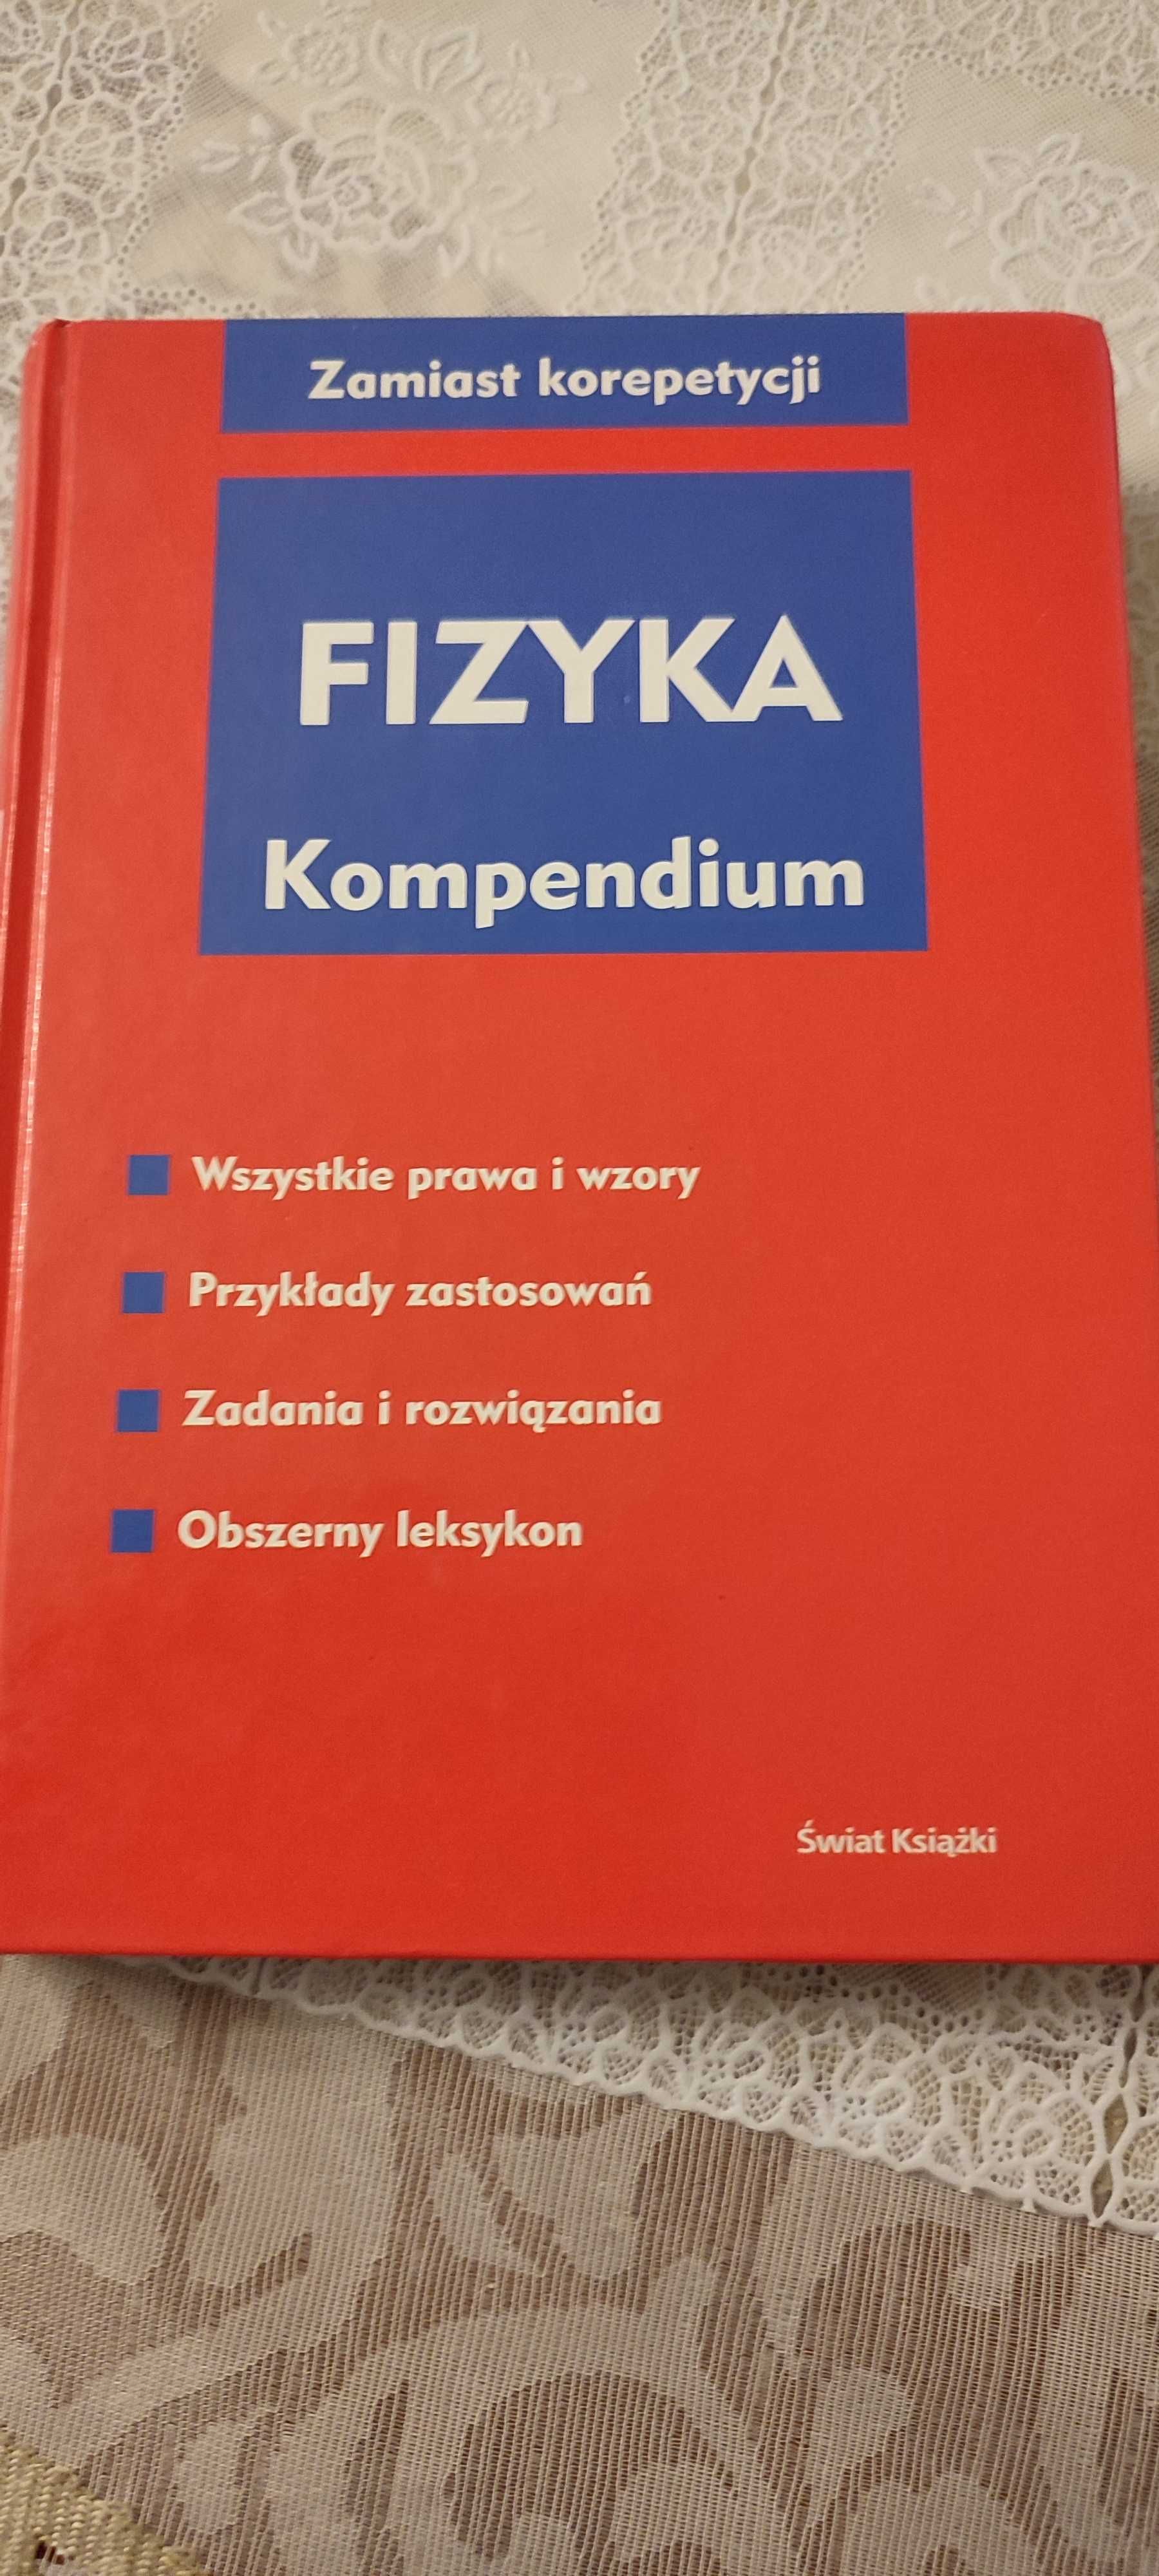 Fizyka kompendium -  korepetycje do matury, H. Gascha, S. Pflanz